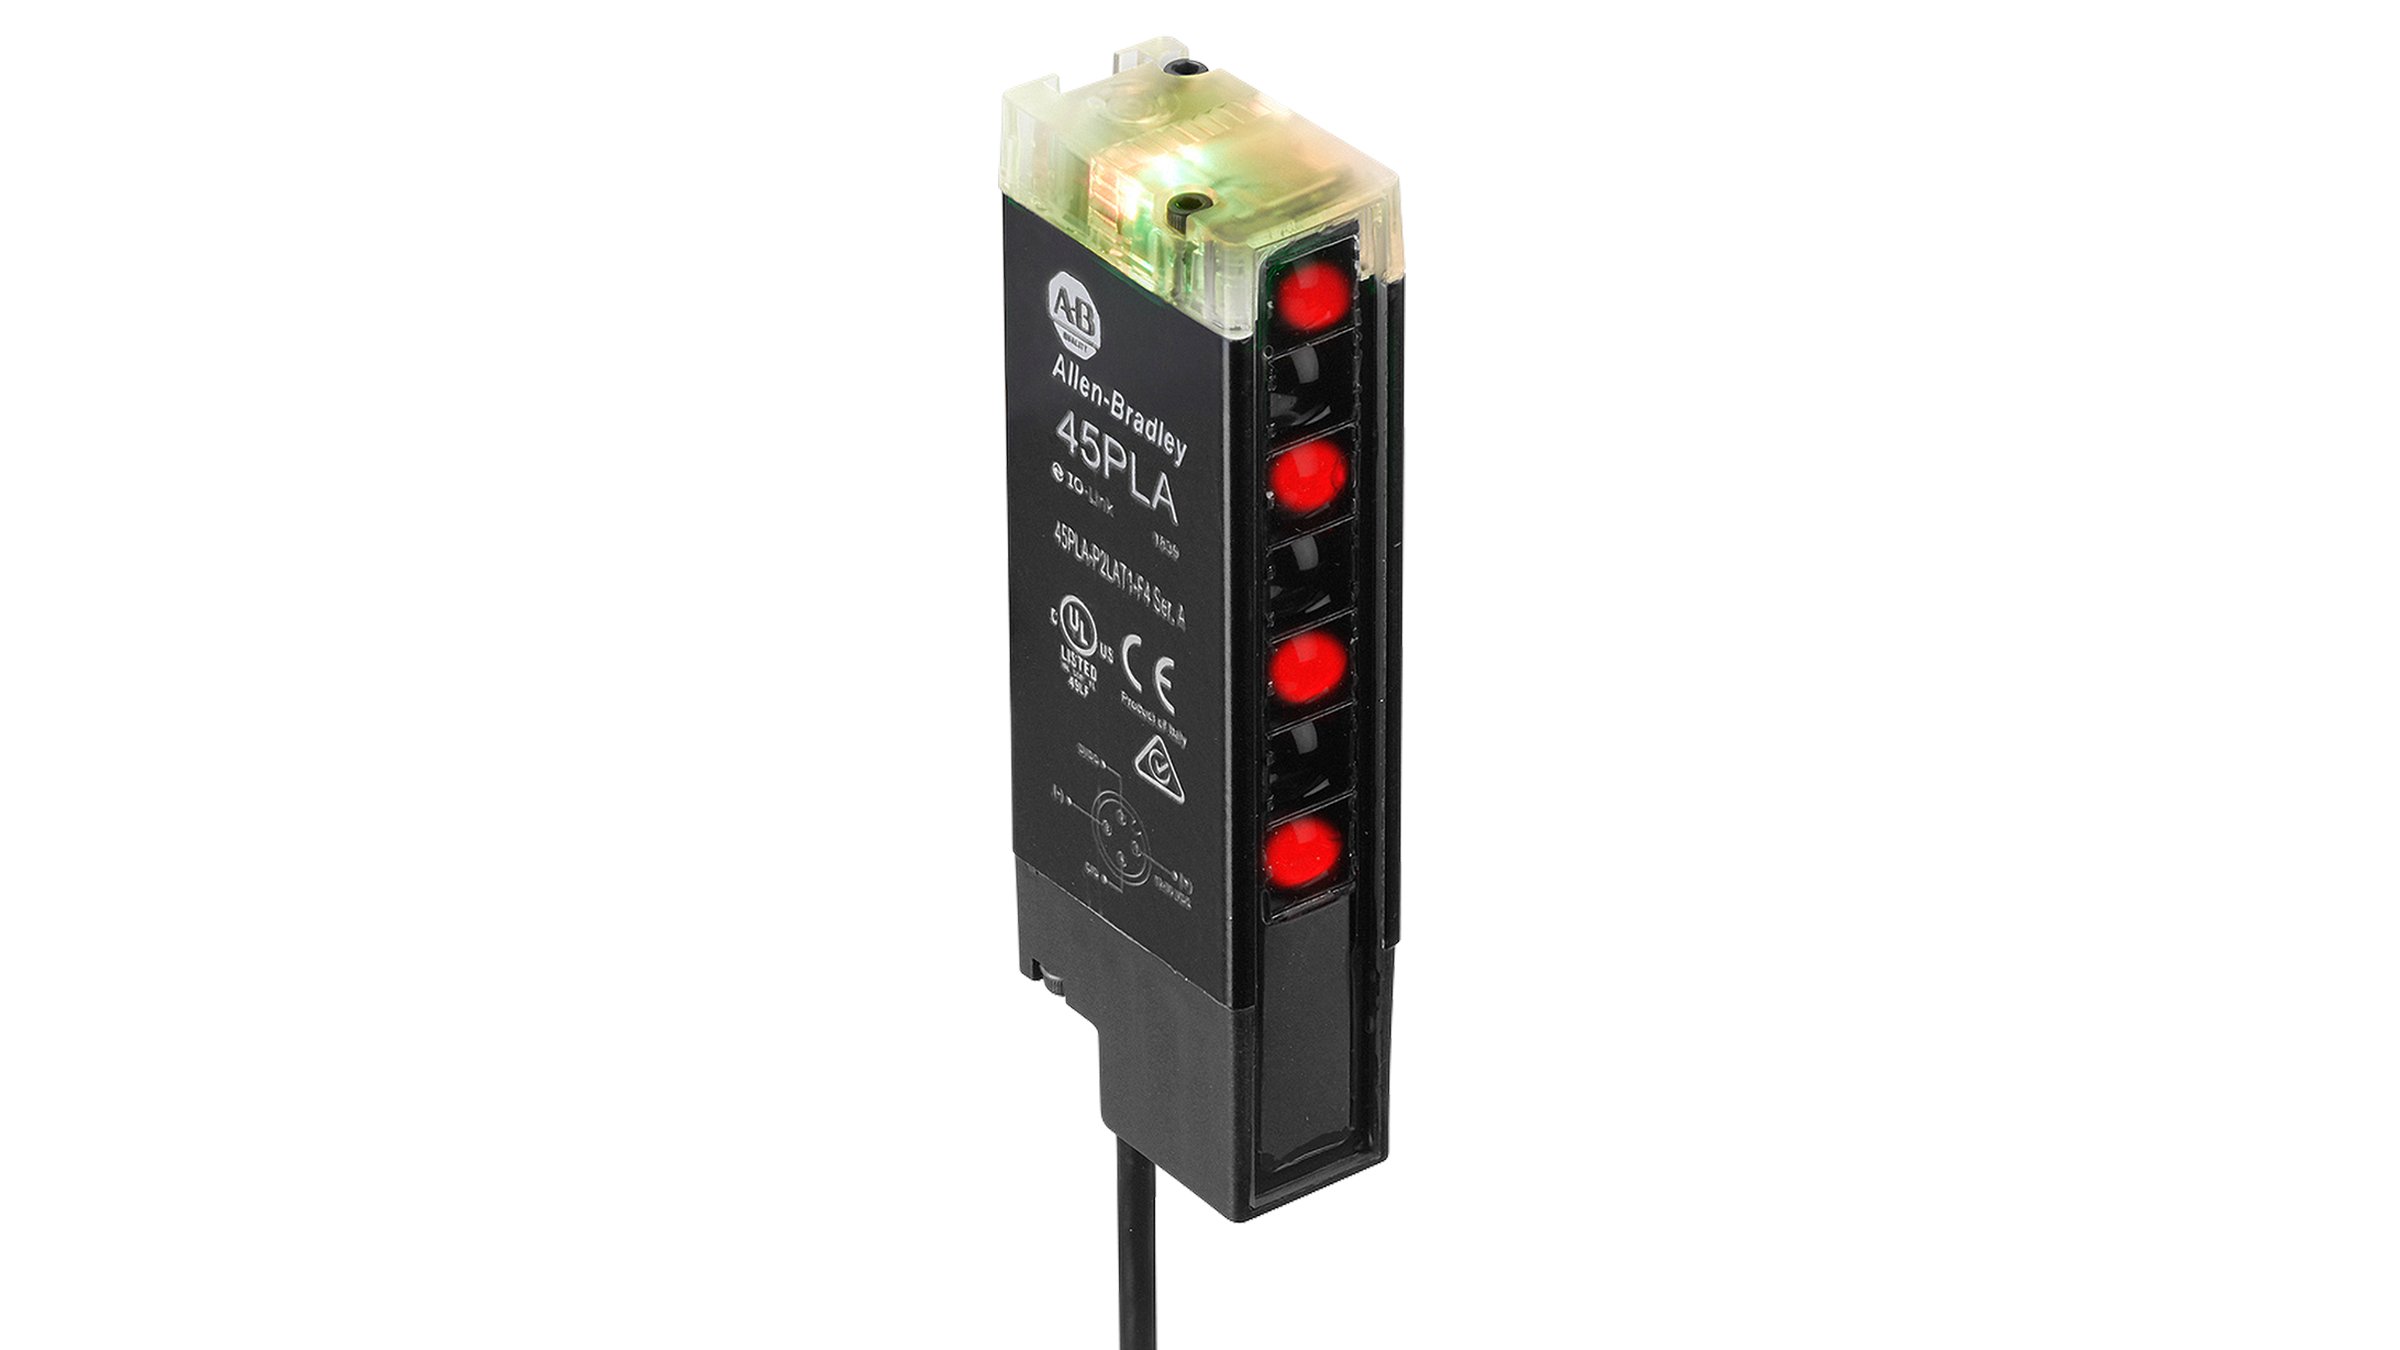 Sensor retangular Allen-Bradley preto com indicadores LED na parte superior e um cabo na parte inferior.